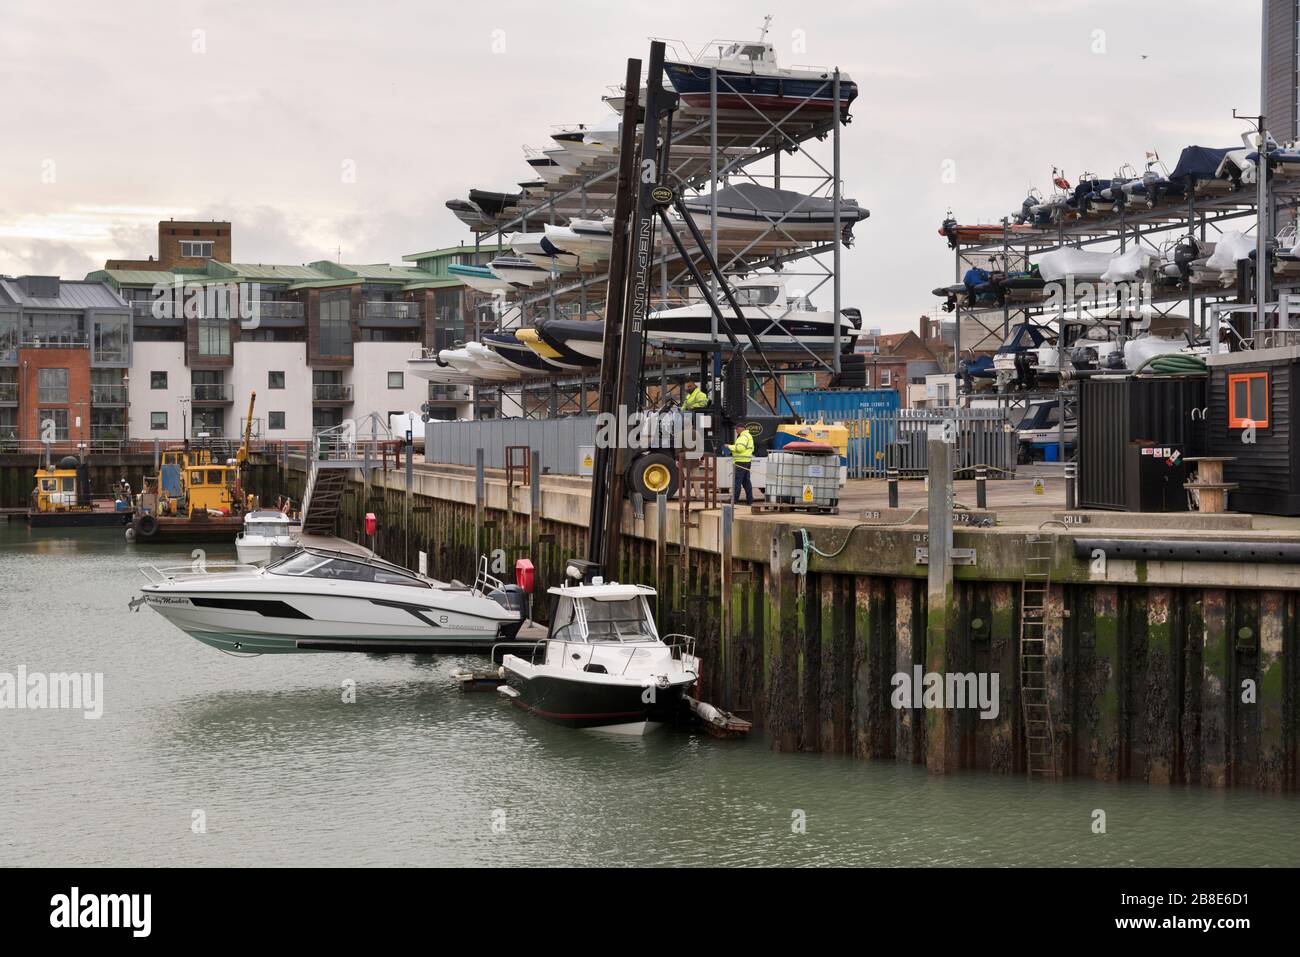 Vue sur les casiers de stockage de bateaux et un bateau soulevé de l'eau à Camber Dock, Portsmouth, Royaume-Uni Banque D'Images